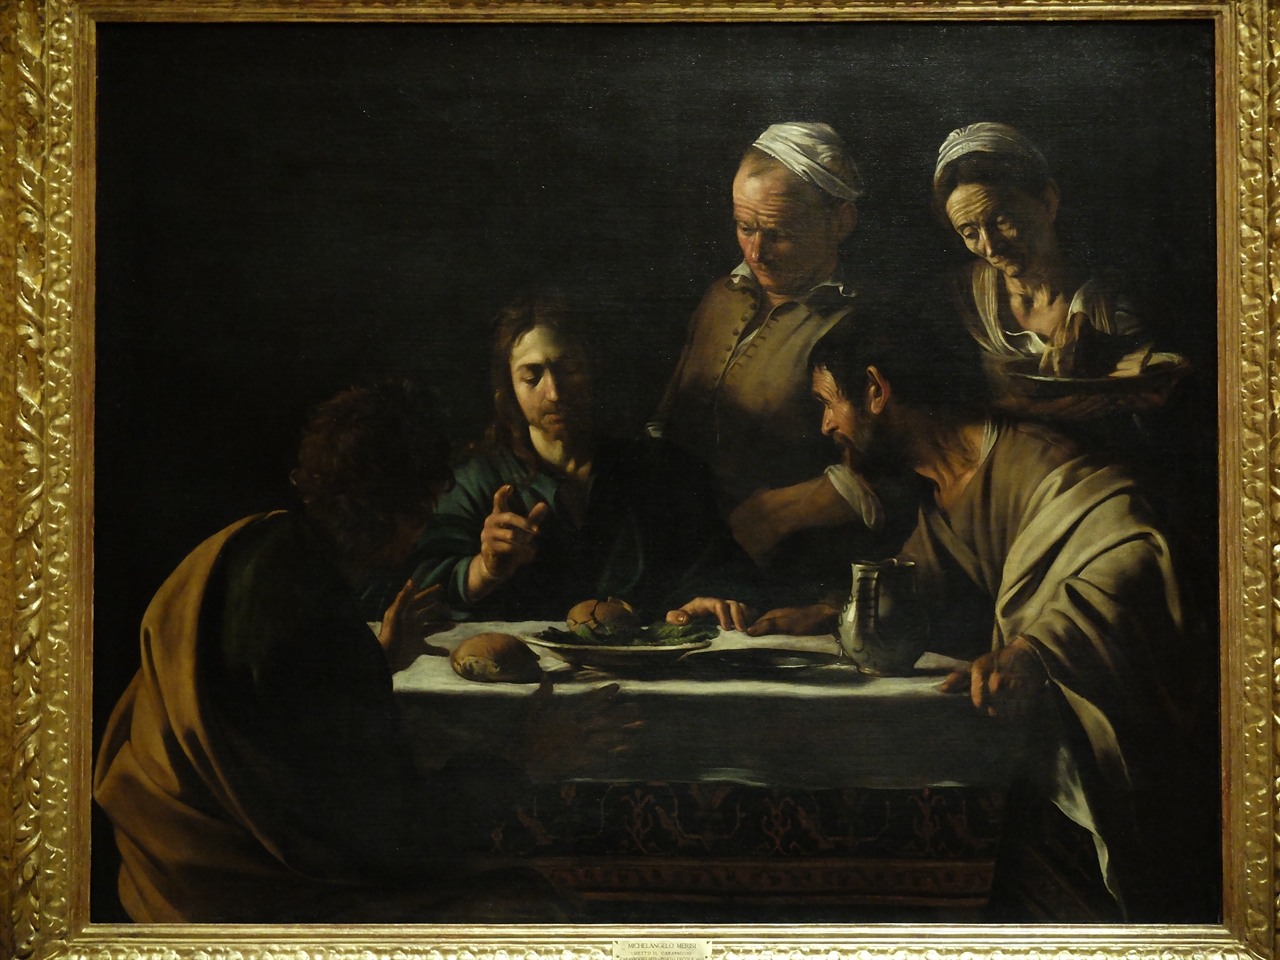 카라바조, '엠마오의 저녁 식사', 밀라노 브레라 미술관. 제자들이 예수의 부활을 처음으로 알게 된 장면을 묘사한 이 그림은 런던 '내셔널 갤러리'에 있는 카라바조의 동명의 그림과 좋은 대비를 이루고 있습니다.   